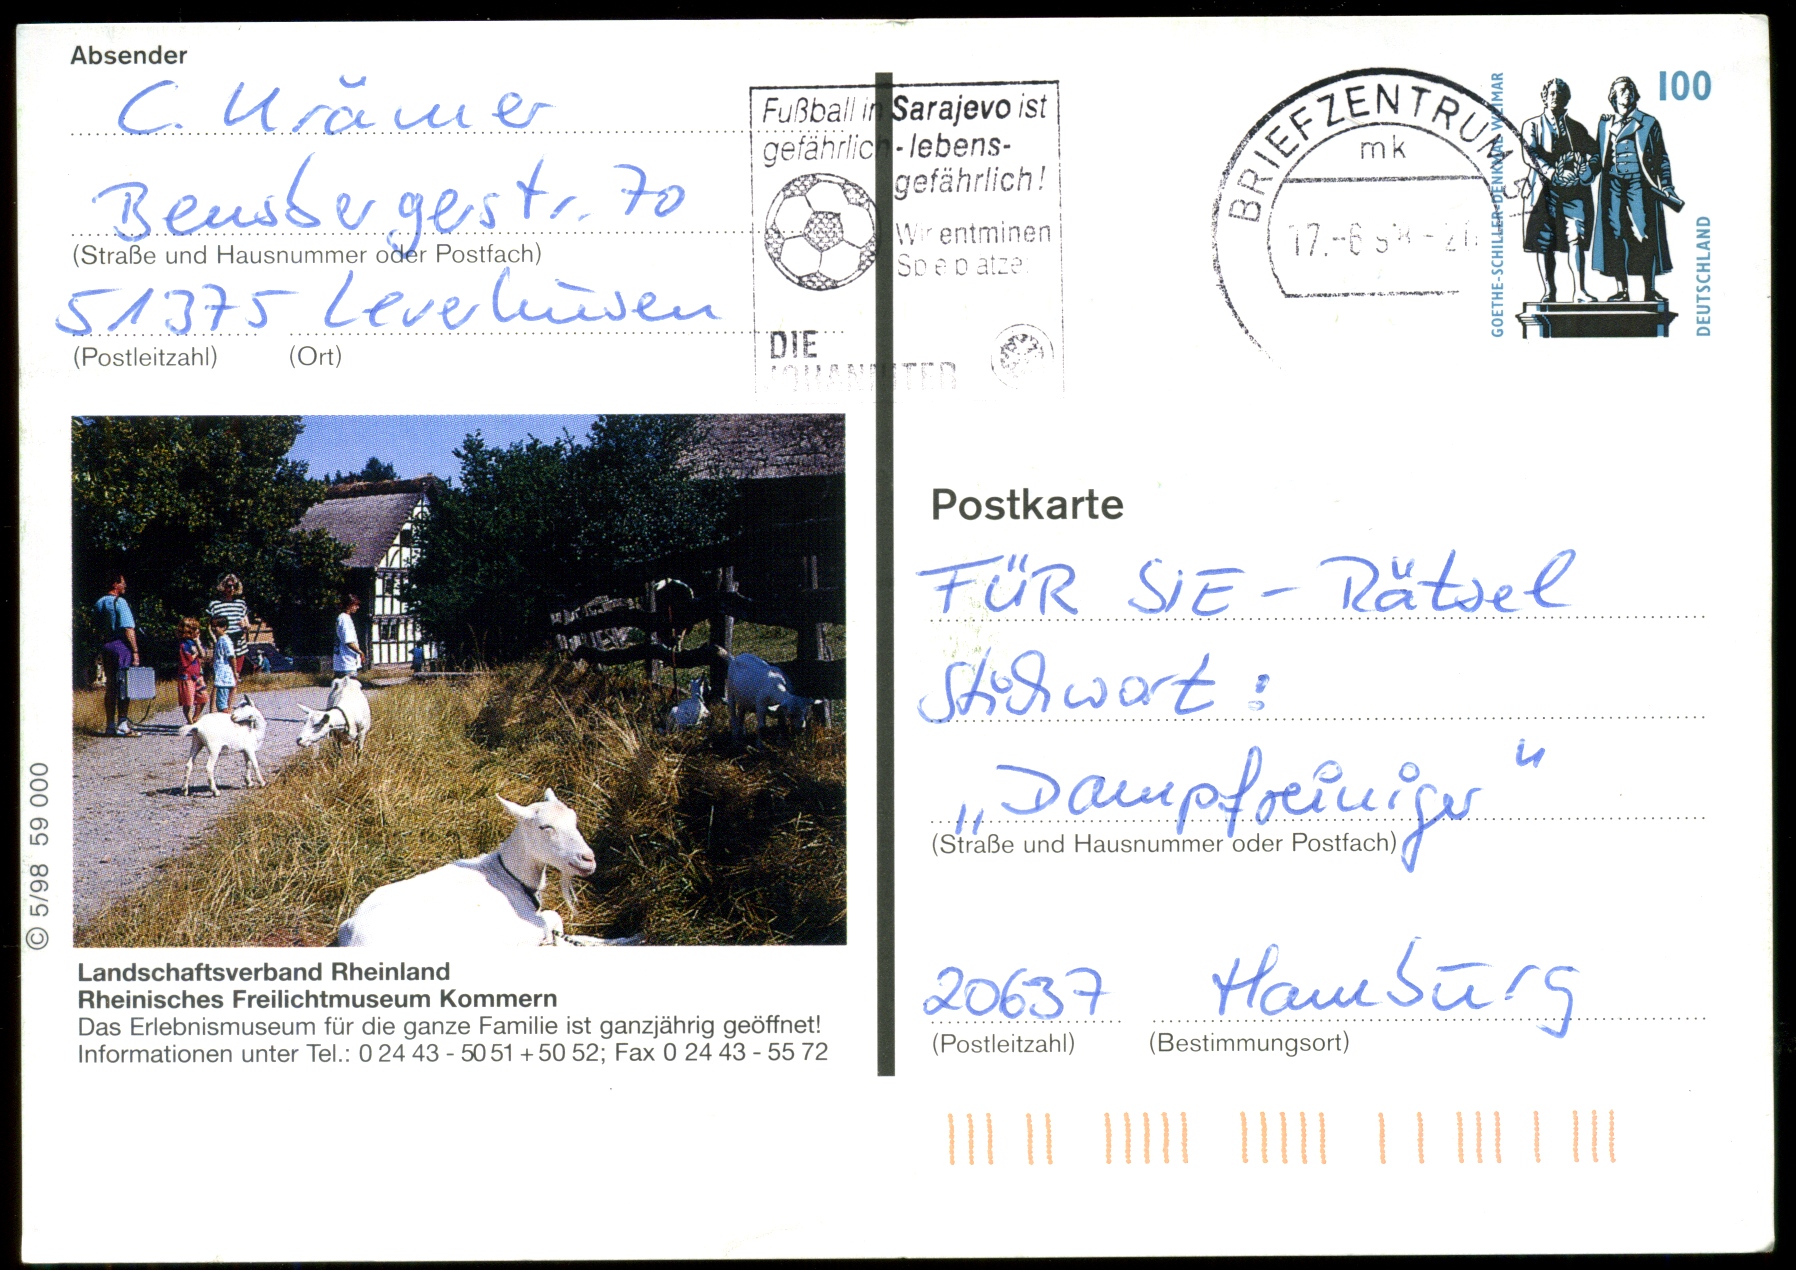 1998: Rheinisches Freilichtmuseum Kommern